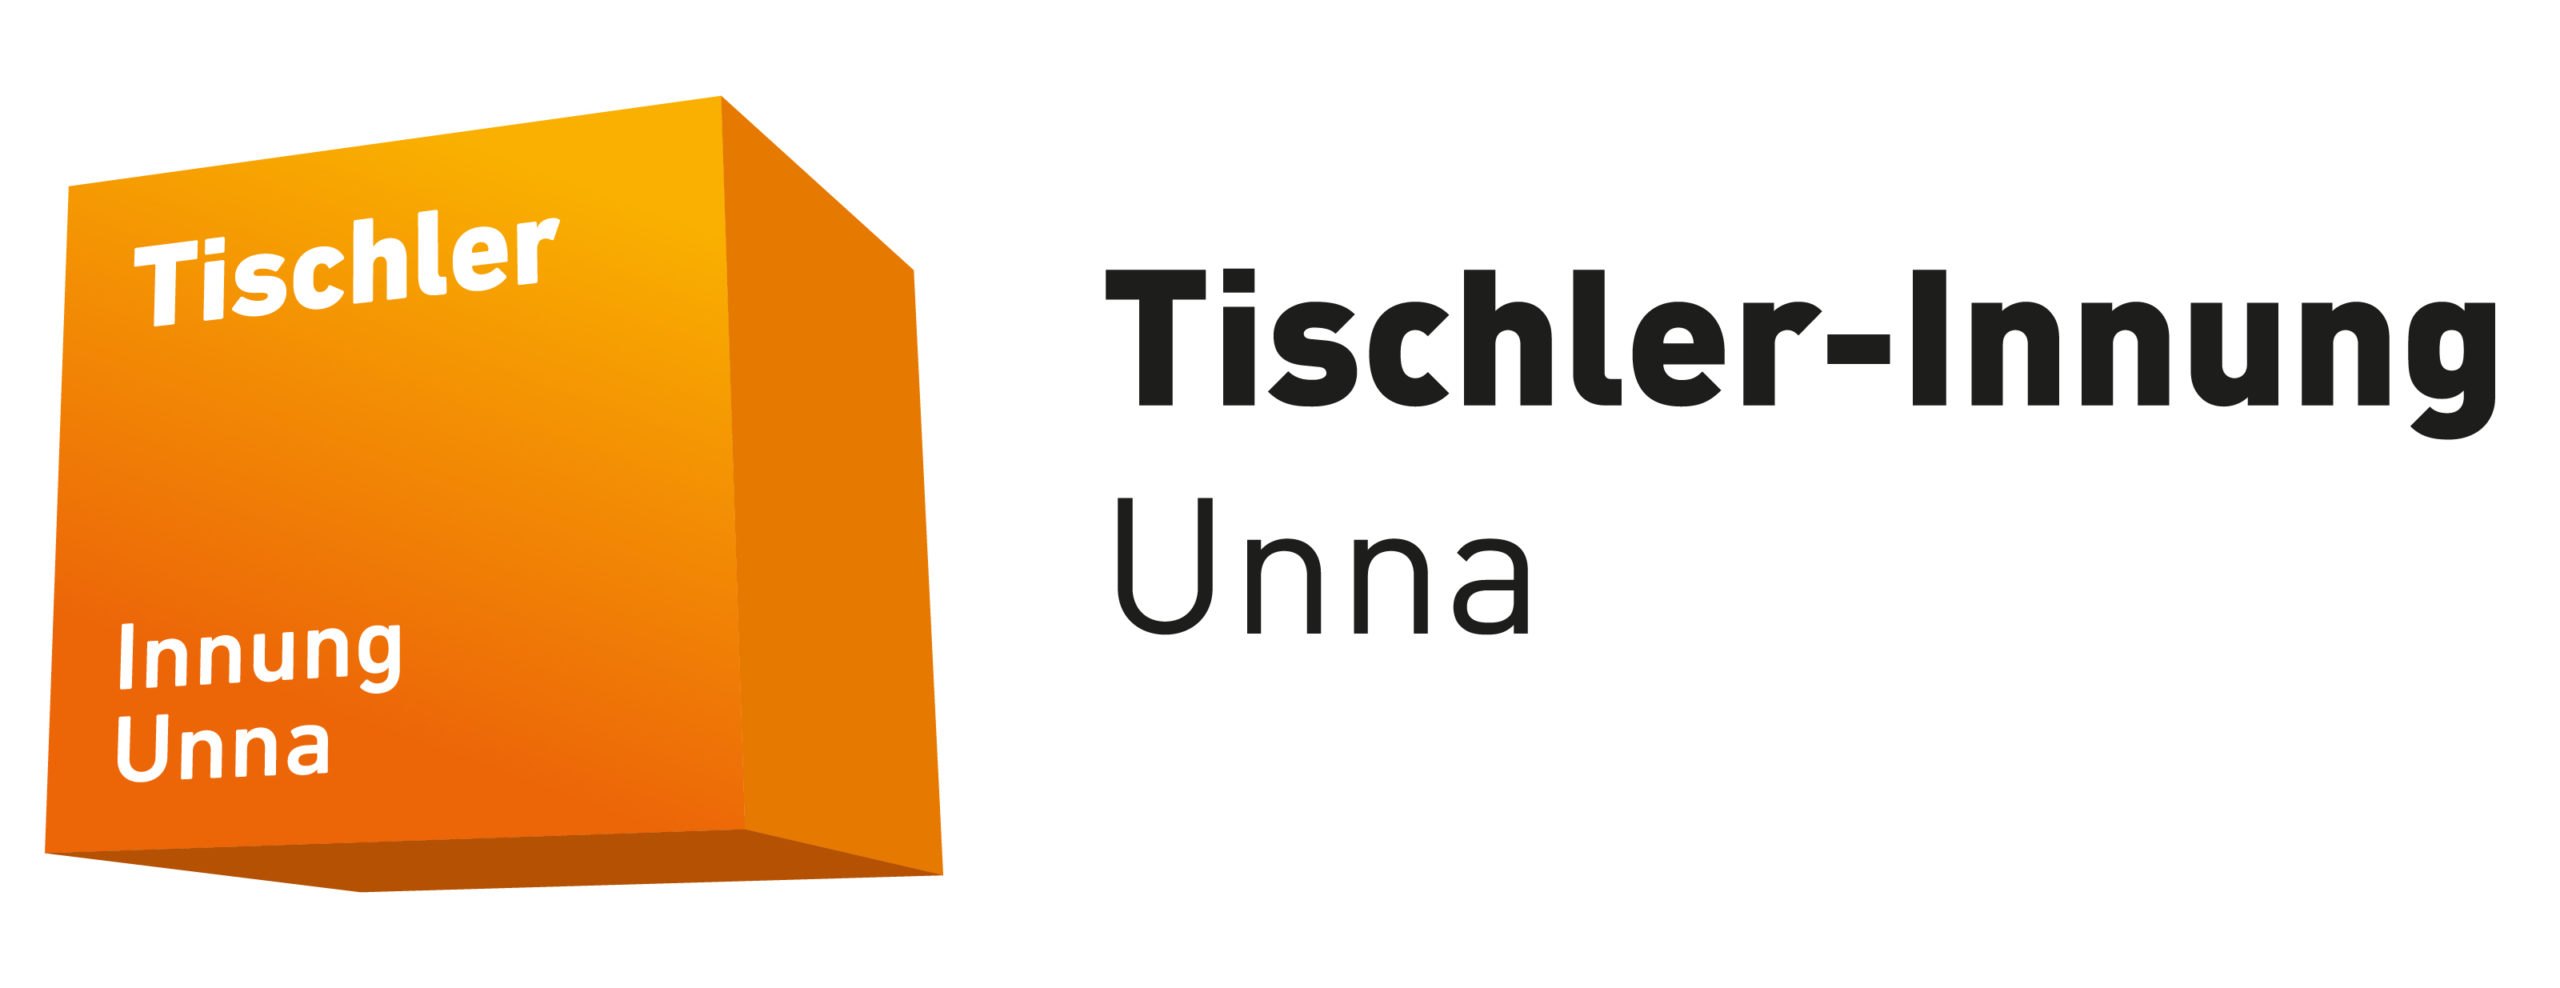 Tischler-Innung Unna